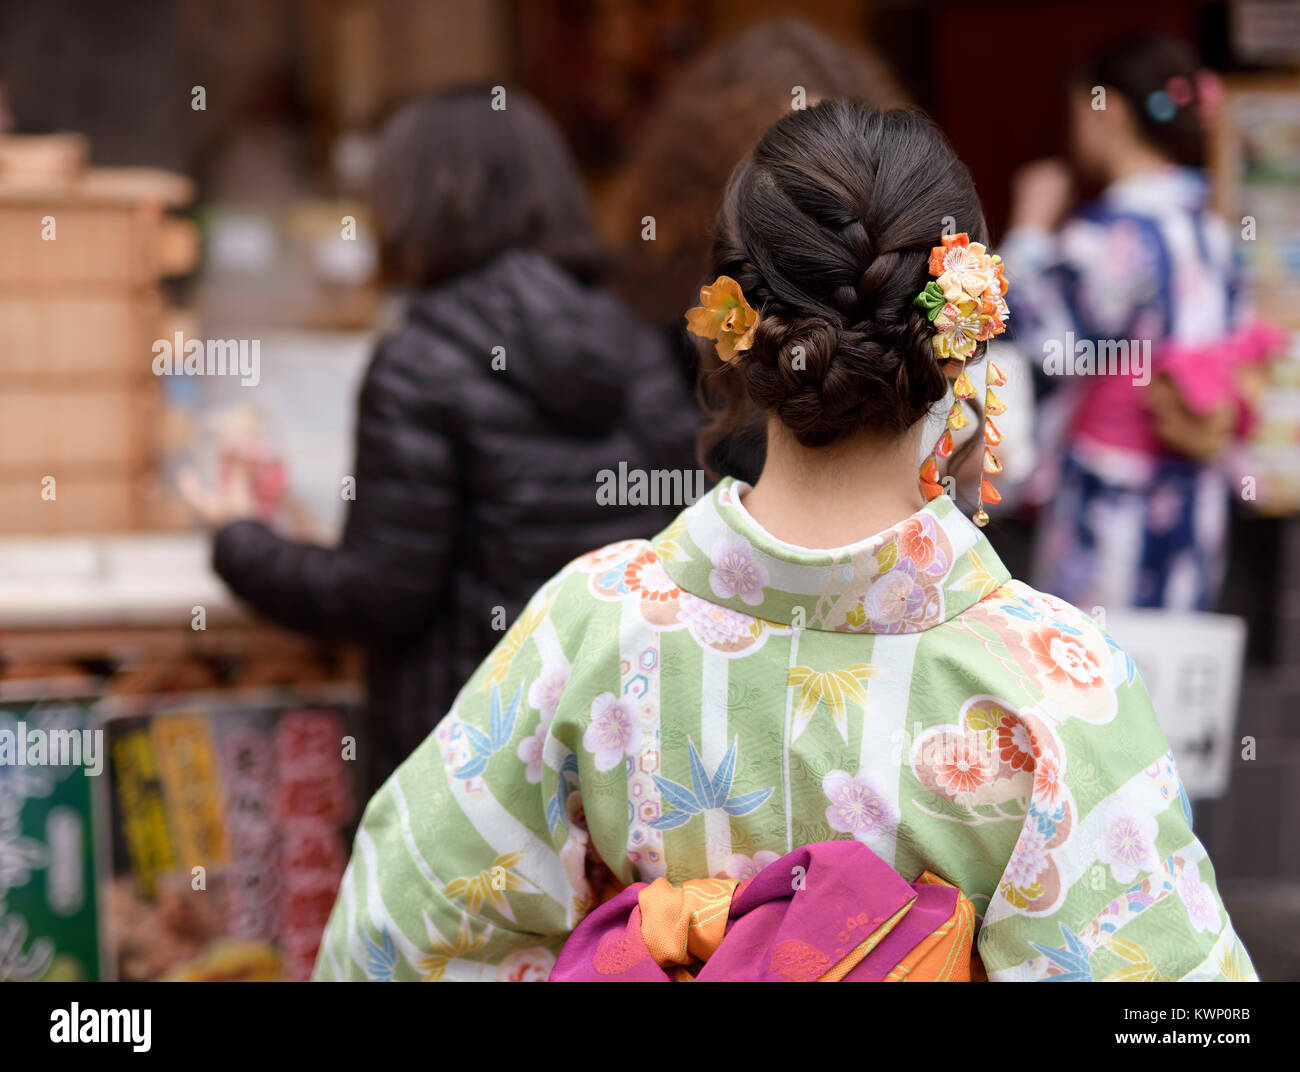 Japanische Mädchen in bunten yukata Kimono mit einem hübschen Frisur und filigranen bunten Haarschmuck Clover, Ansicht von Hinten Nahaufnahme. Kyoto, Japan. Stockfoto